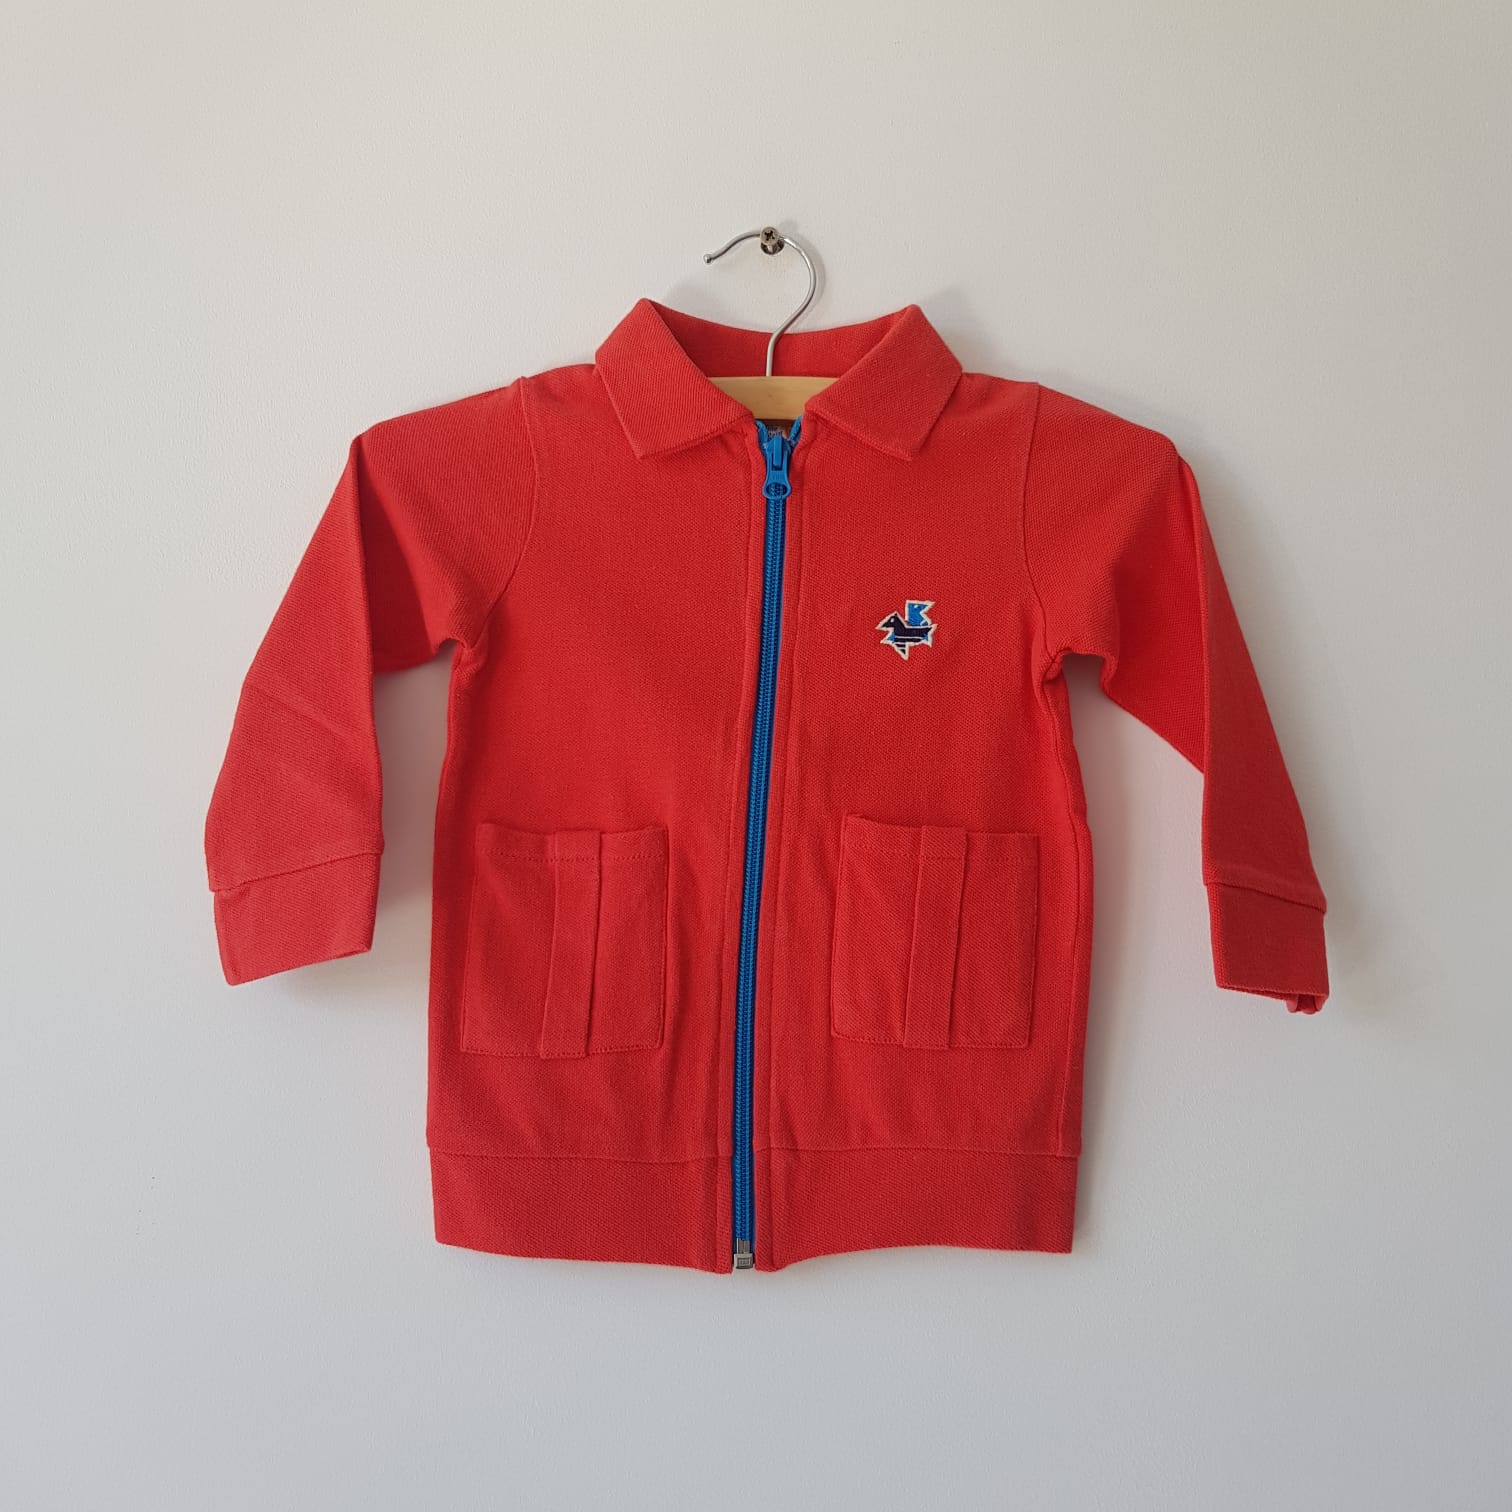 Dis une Couleur - Vest Red Polo Blue Zipper Two Pockets Blue Birds - Vest Rood met Blauwe Rits